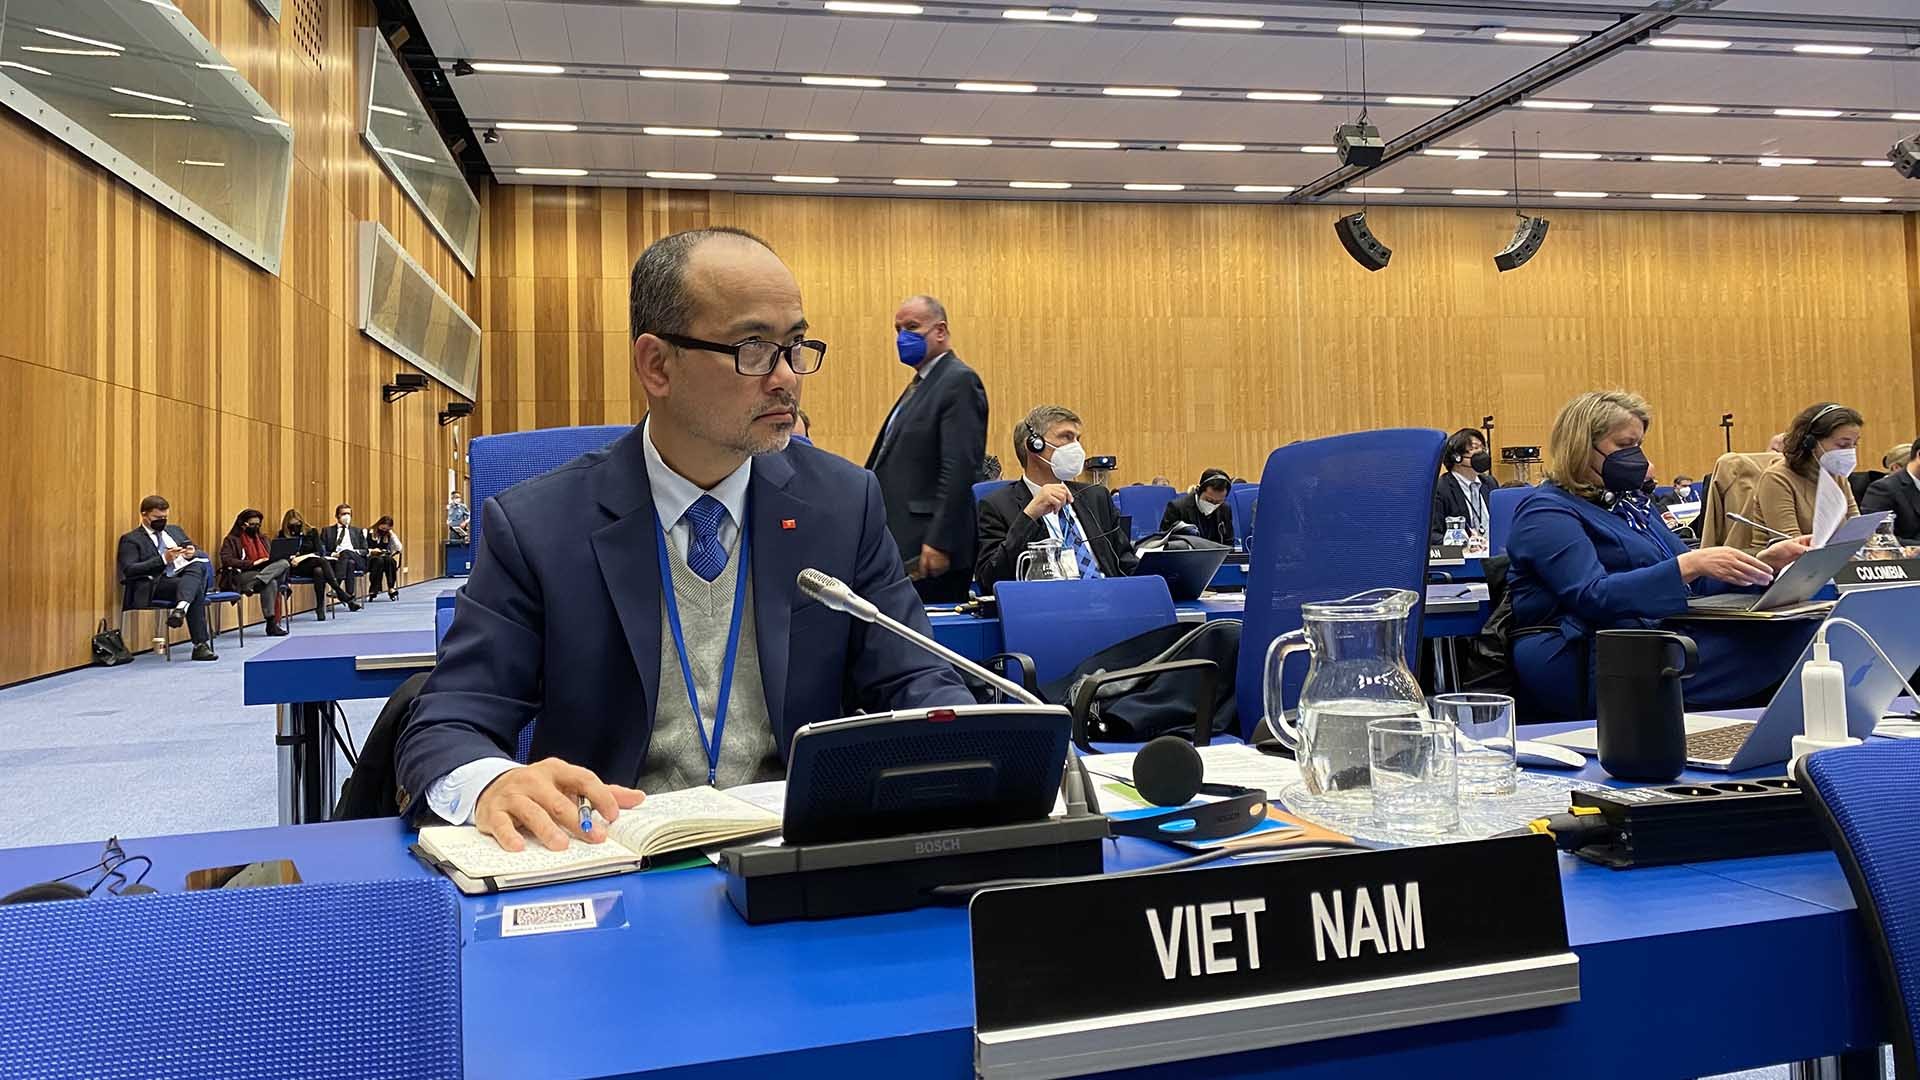 Đại sứ Nguyễn Trung Kiên, Đại diện thường trực Việt Nam tại IAEA tham dự với tư cách thành viên Hội đồng Thống đốc nhiệm kỳ 2021-2023.